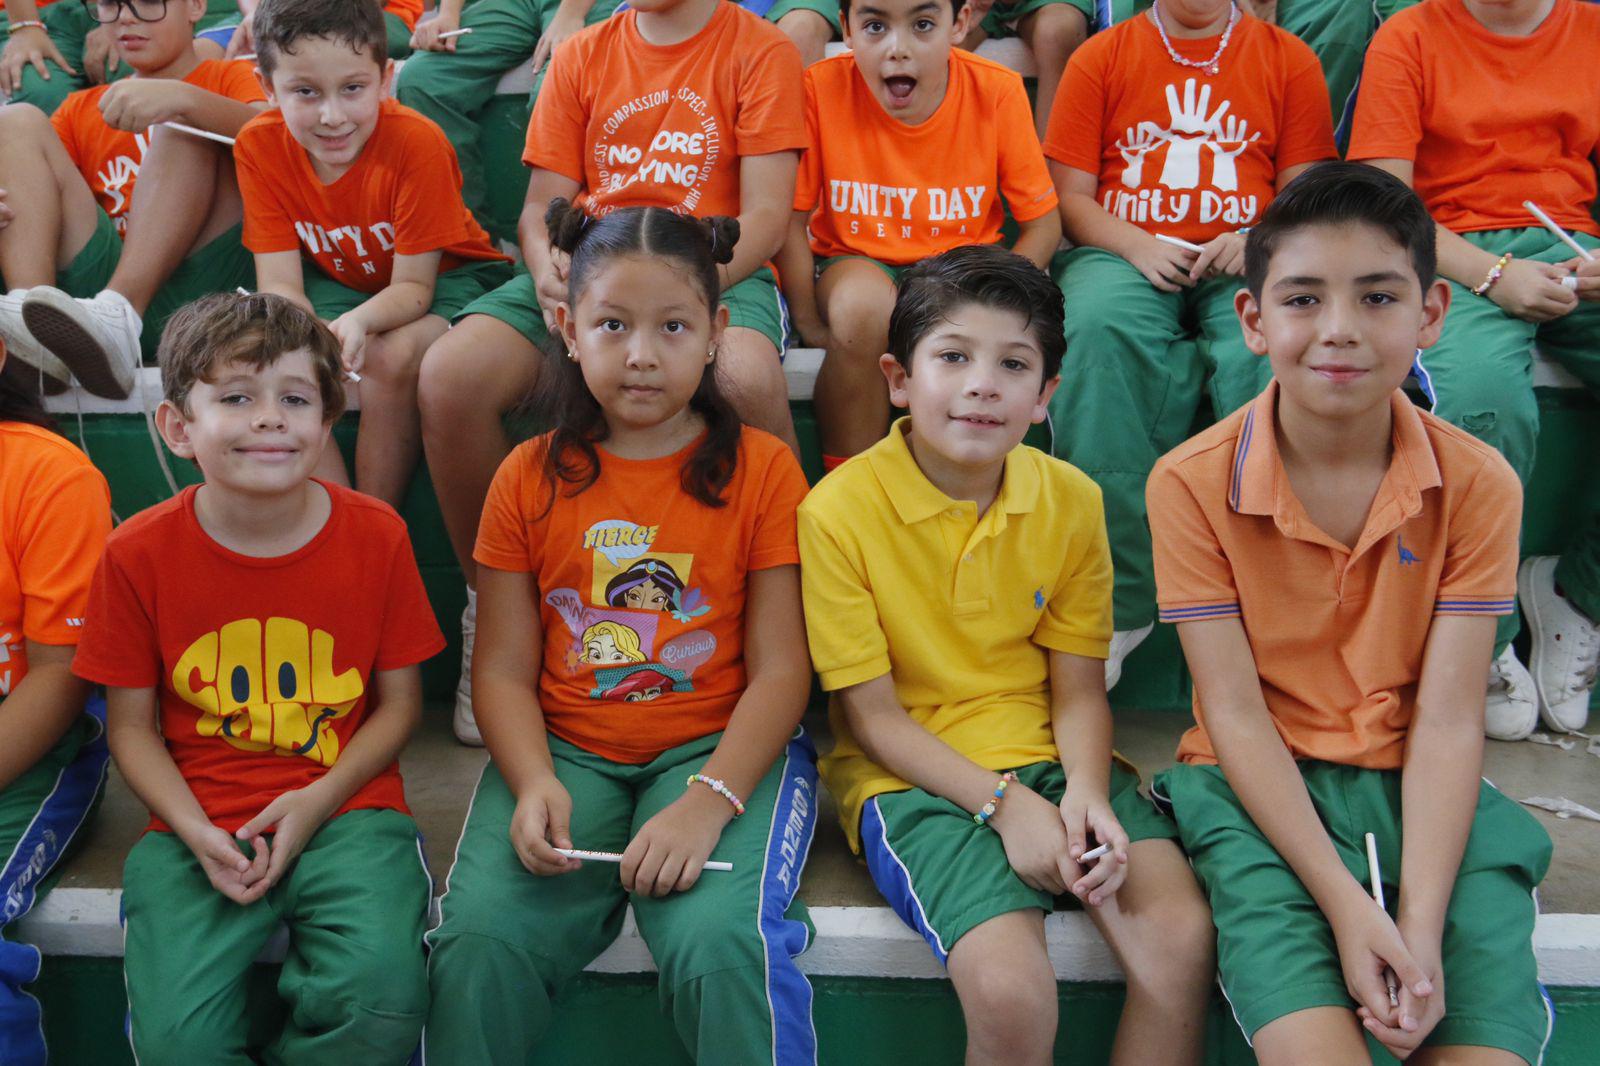 $!Instituto Senda se viste de naranja por la lucha contra el bullying en el Unity Day